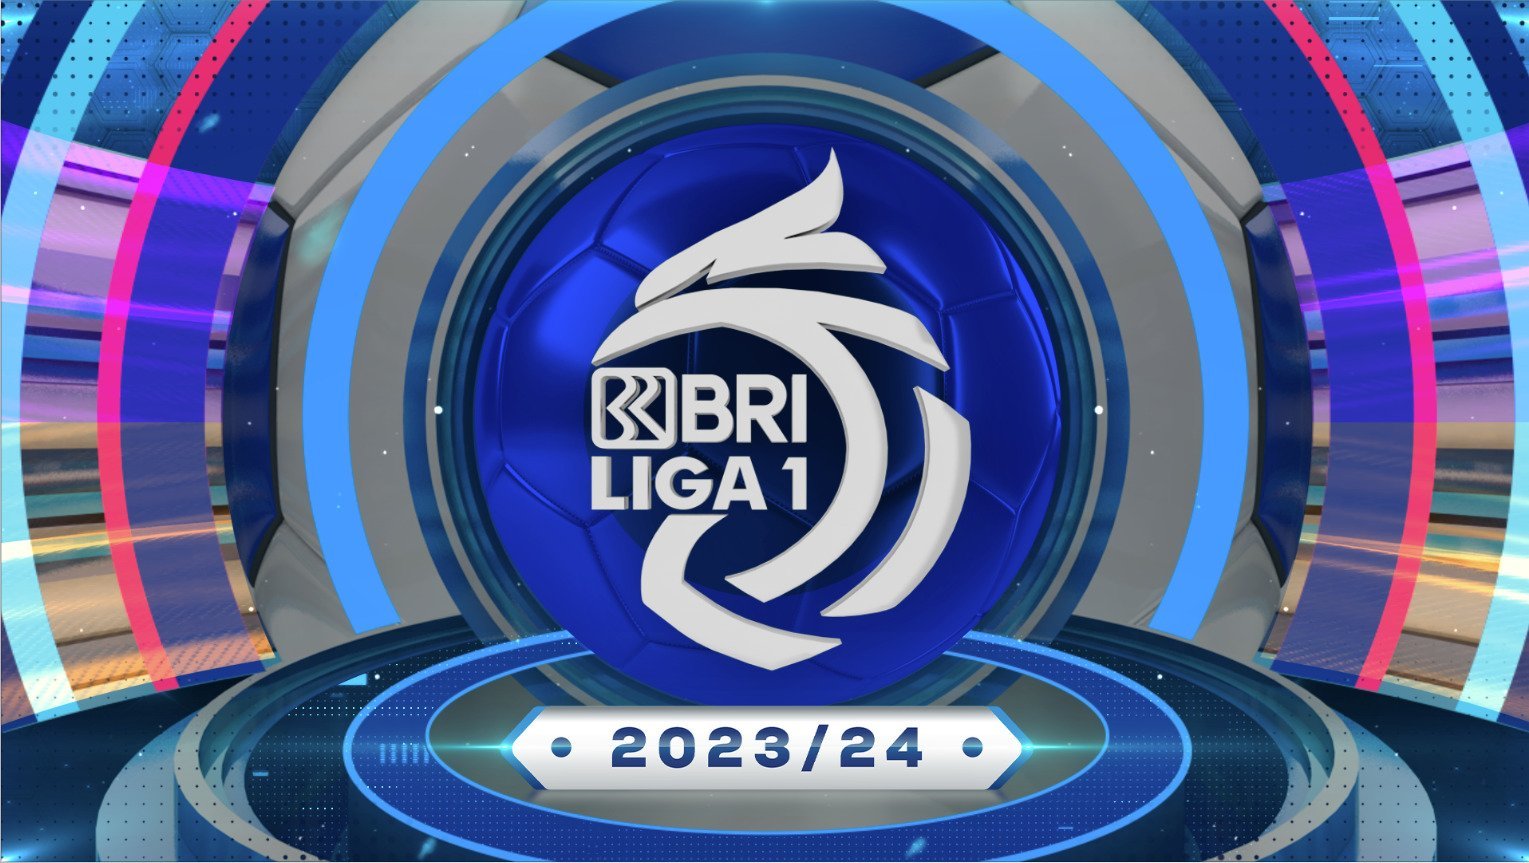 BRI Liga 1 2023/24 - PT. Indosiar Visual Mandiri | Memang Untuk Anda